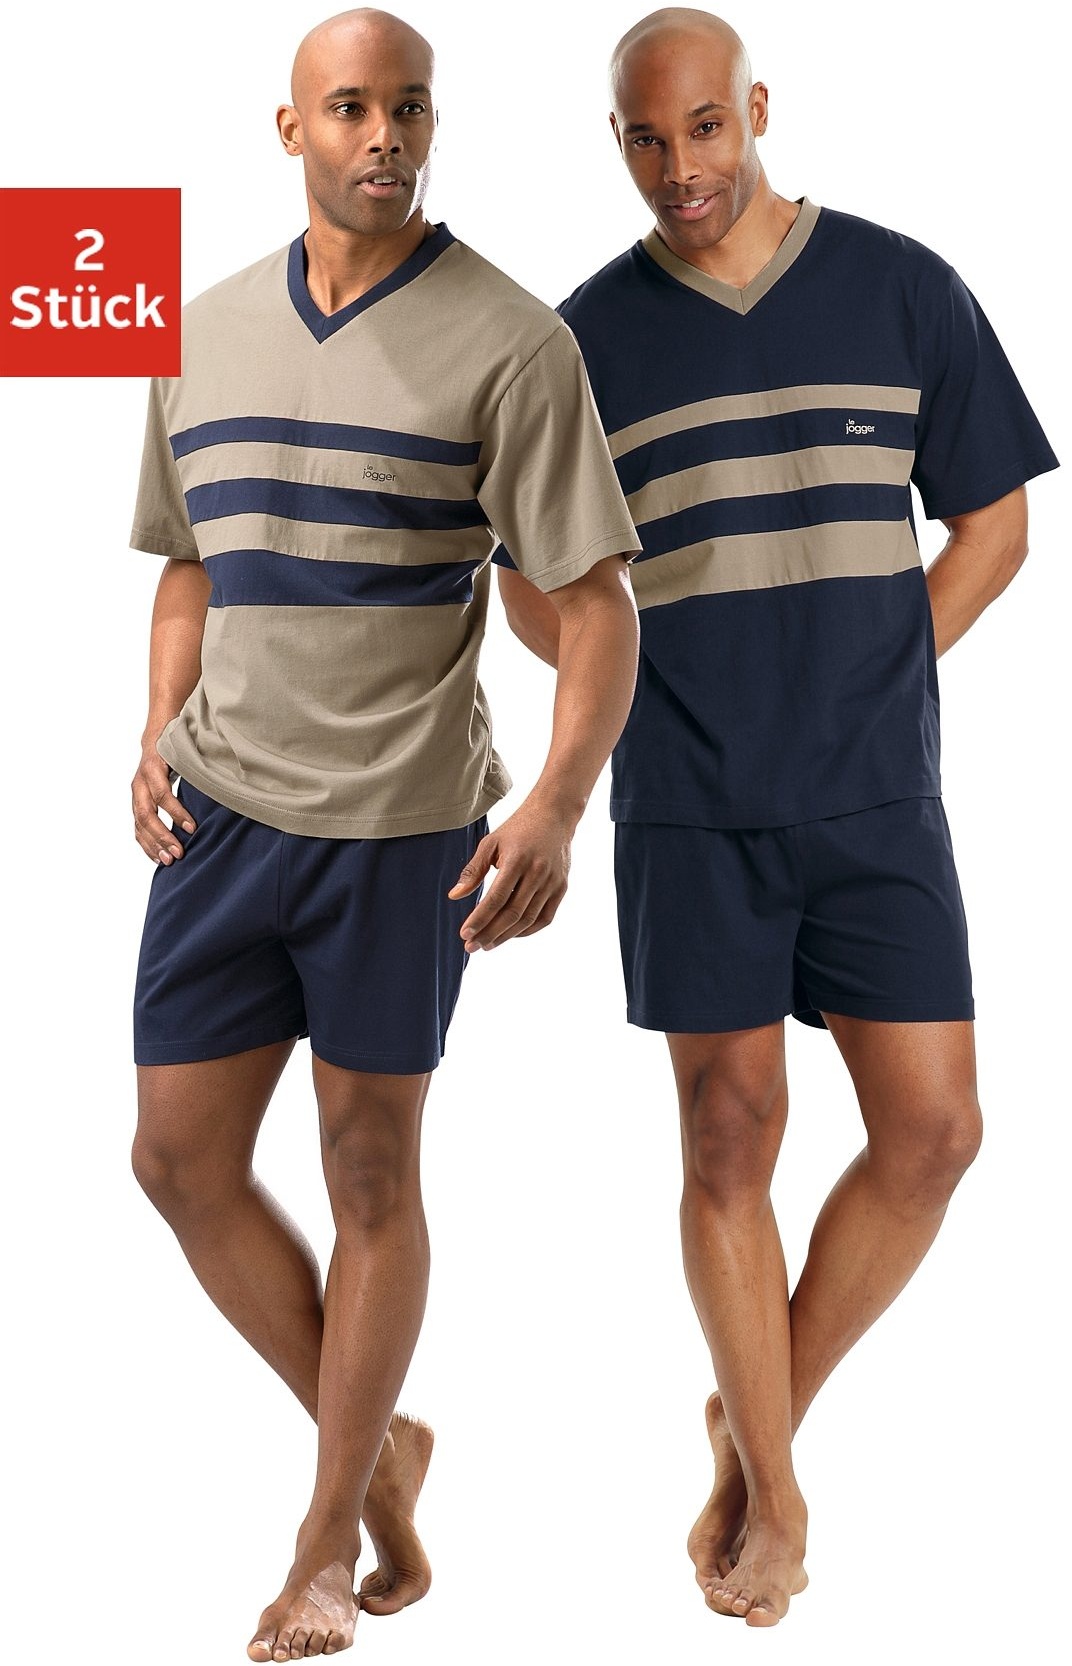 Shorty LE JOGGER Gr. 48/50 (M), bunt (marine, beige) Herren Homewear-Sets Pyjamas mit kontrastfarbigen Einsätzen vorn